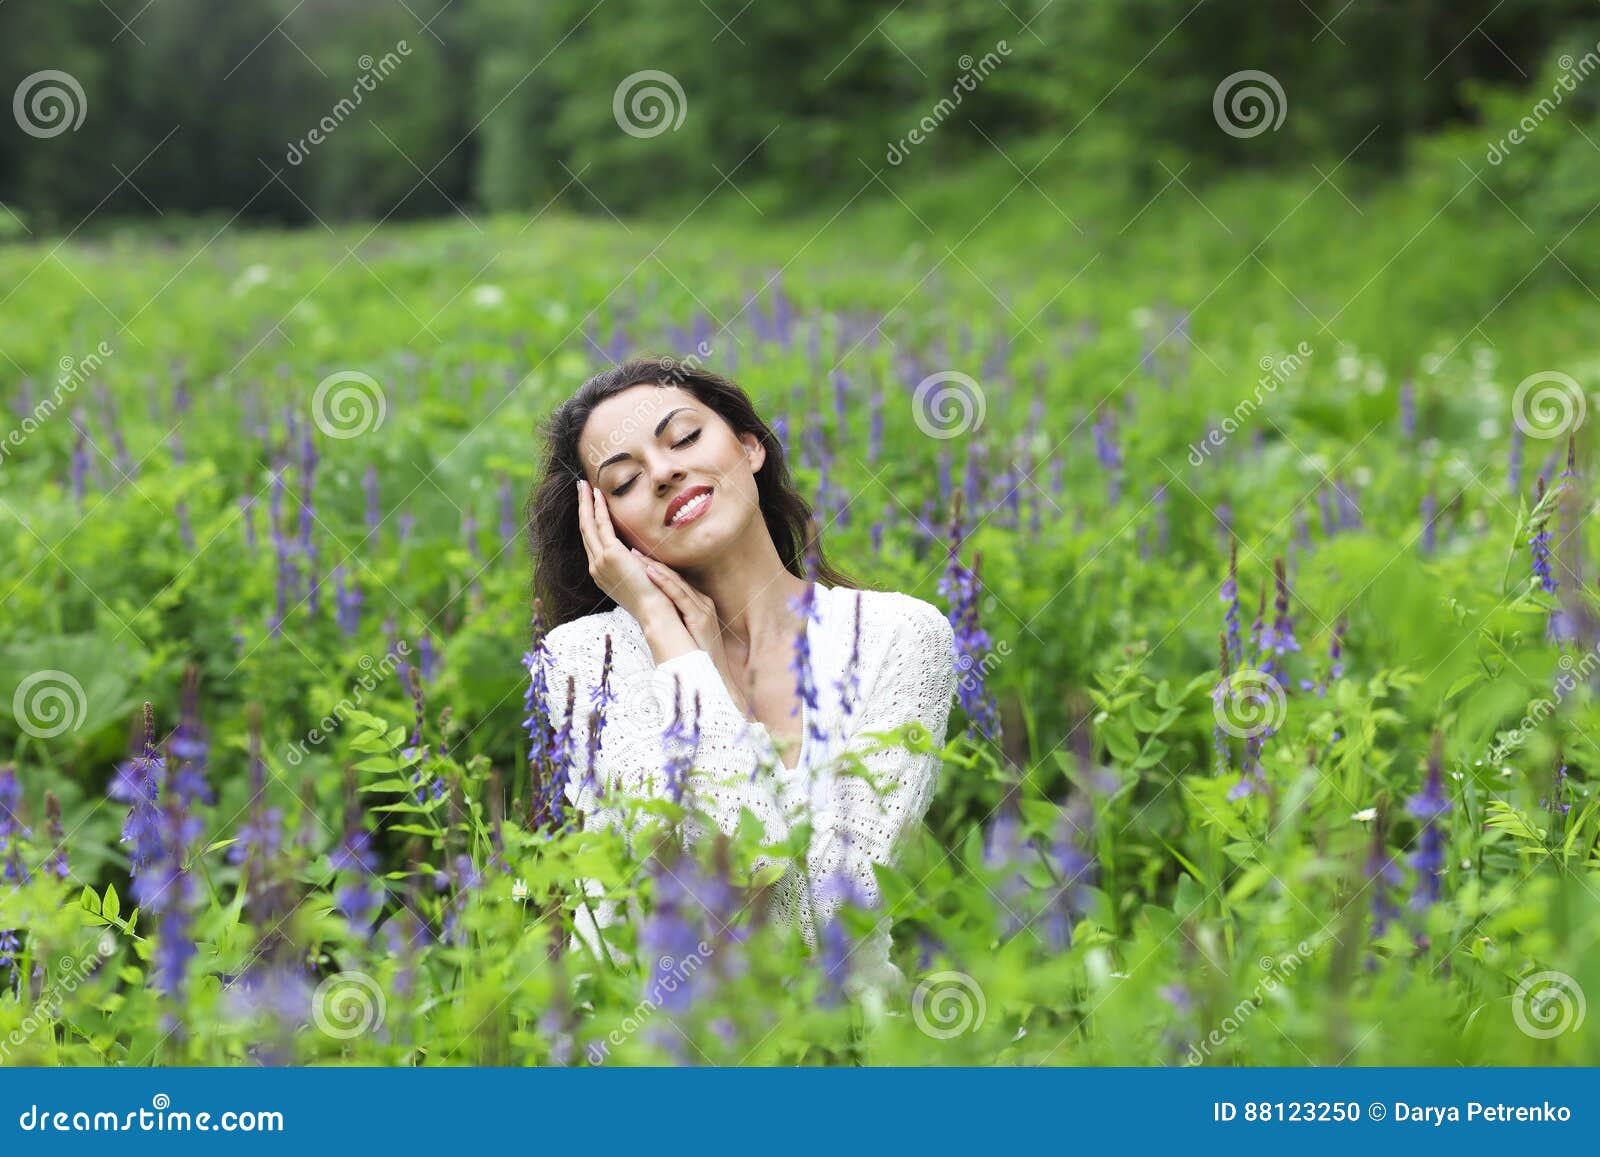 happy pretty brunette woman in flower field